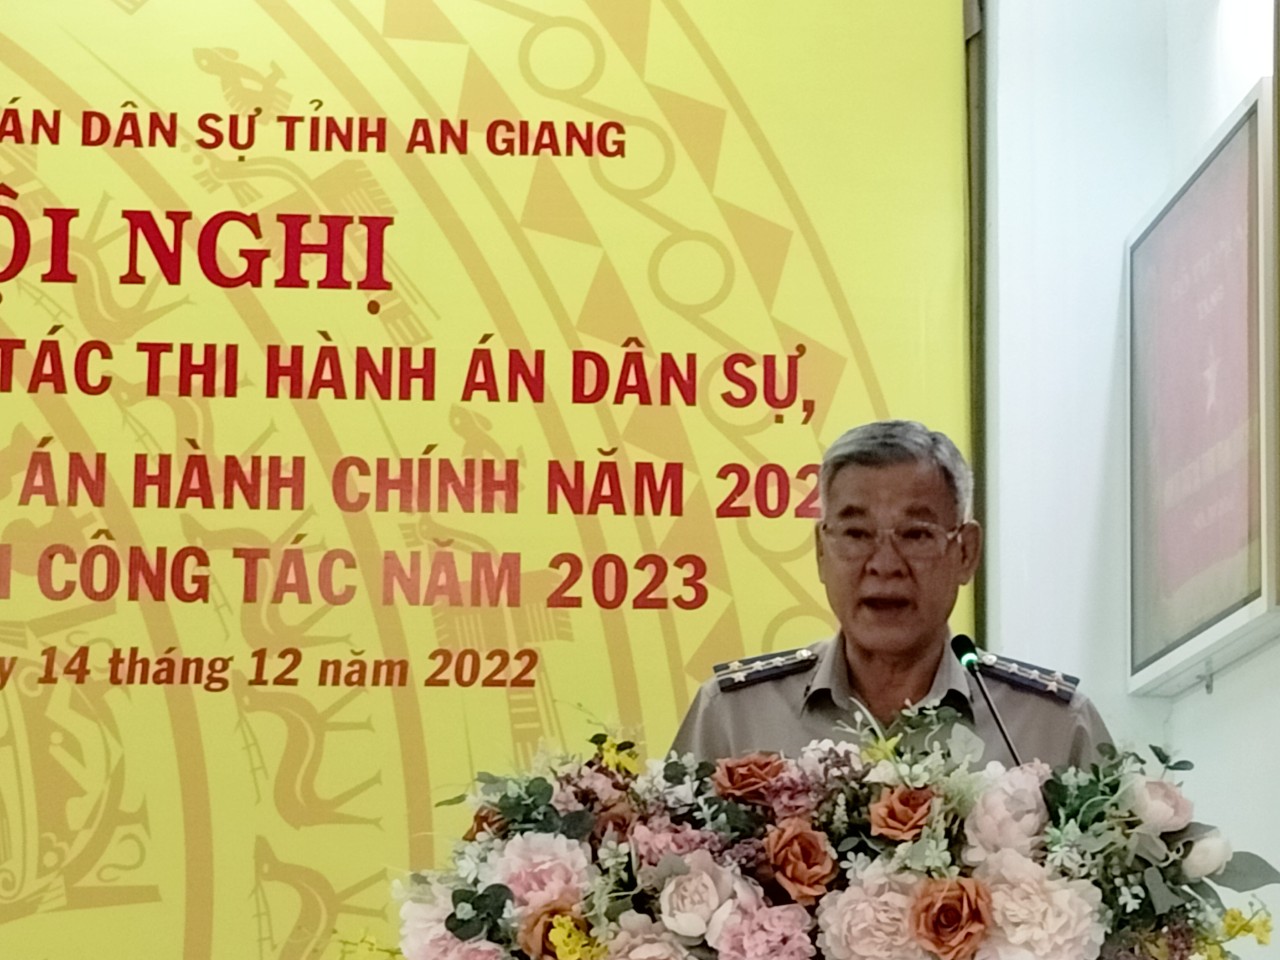 Cục THADS tỉnh An Giang sơ kết công tác thi hành án dân sự, hành chính 6 tháng đầu năm 2020.